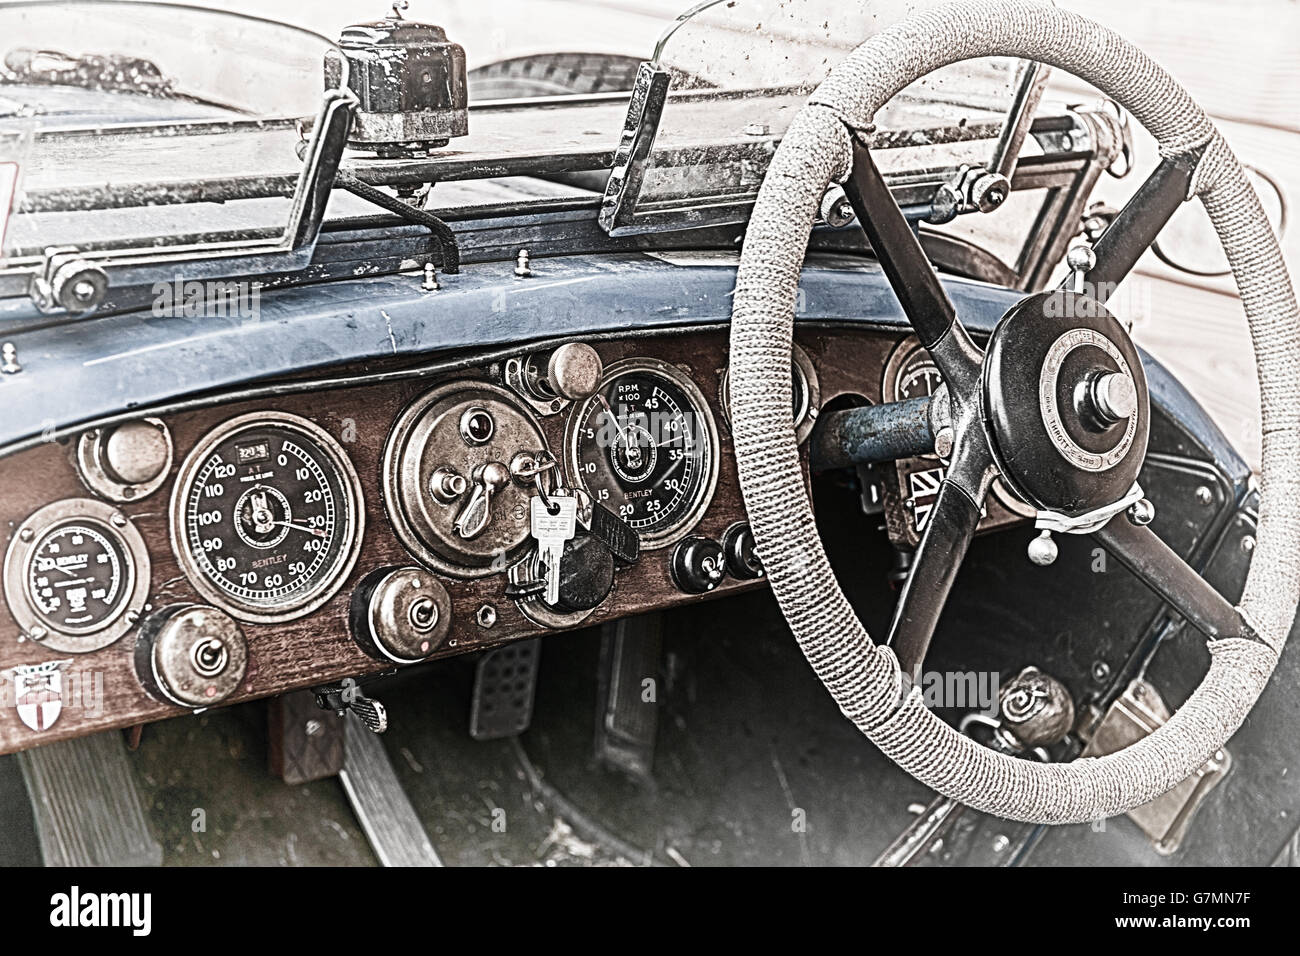 Photo détail de la planche de bord d'une voiture de course Bentley des années 30 Banque D'Images